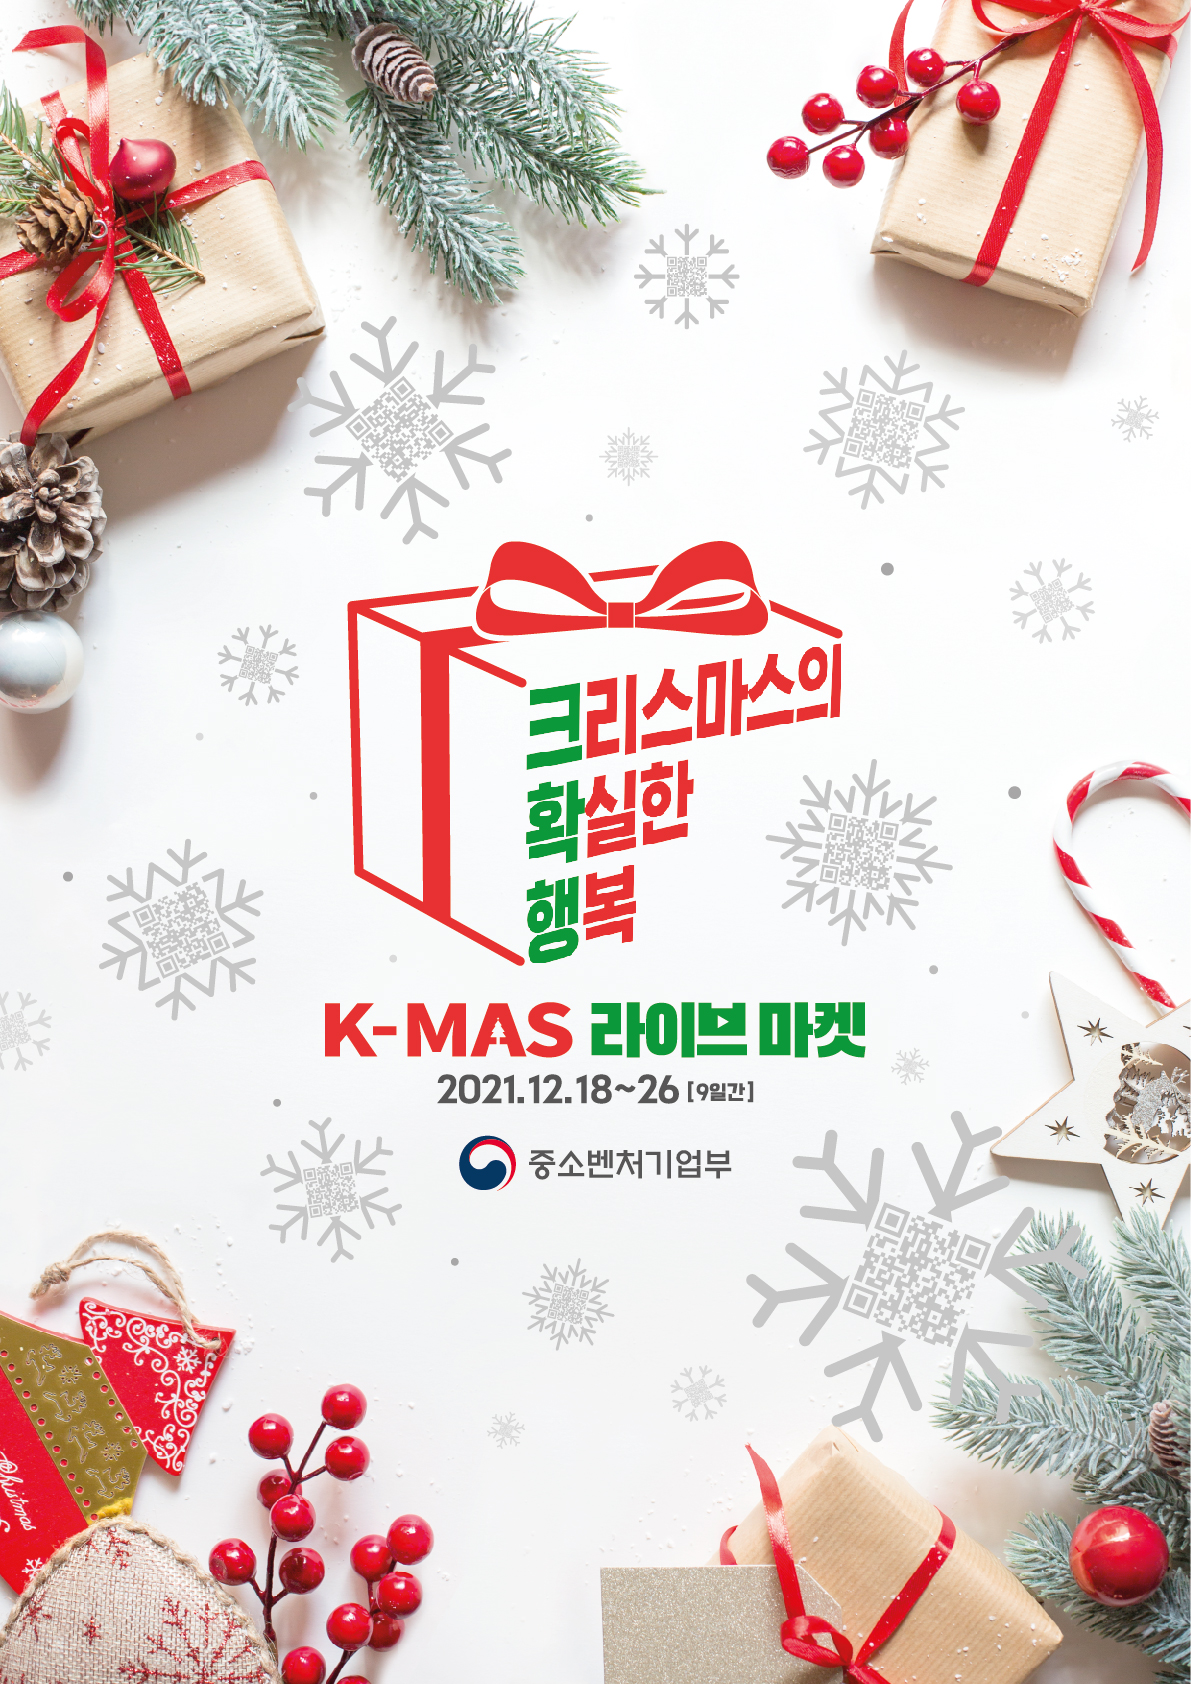 「크리스마스 마켓(K-MAS 라이브 마켓)」 개최 홍보 [이미지]